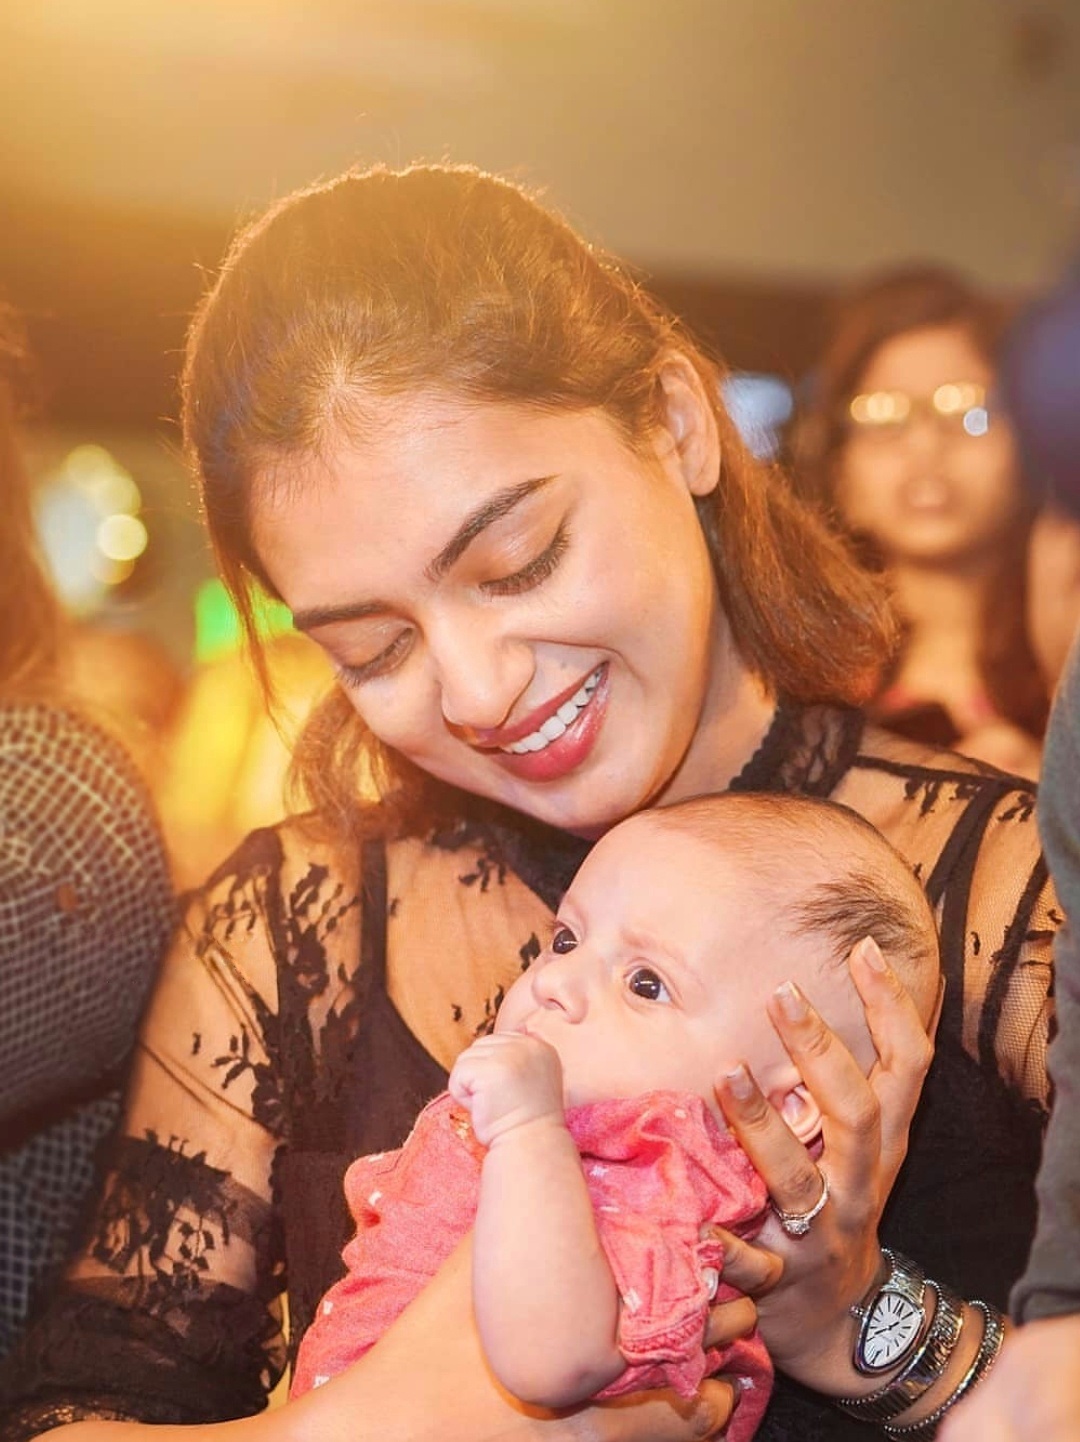 Nazriya Nazim Latest Cute Photos With A Baby